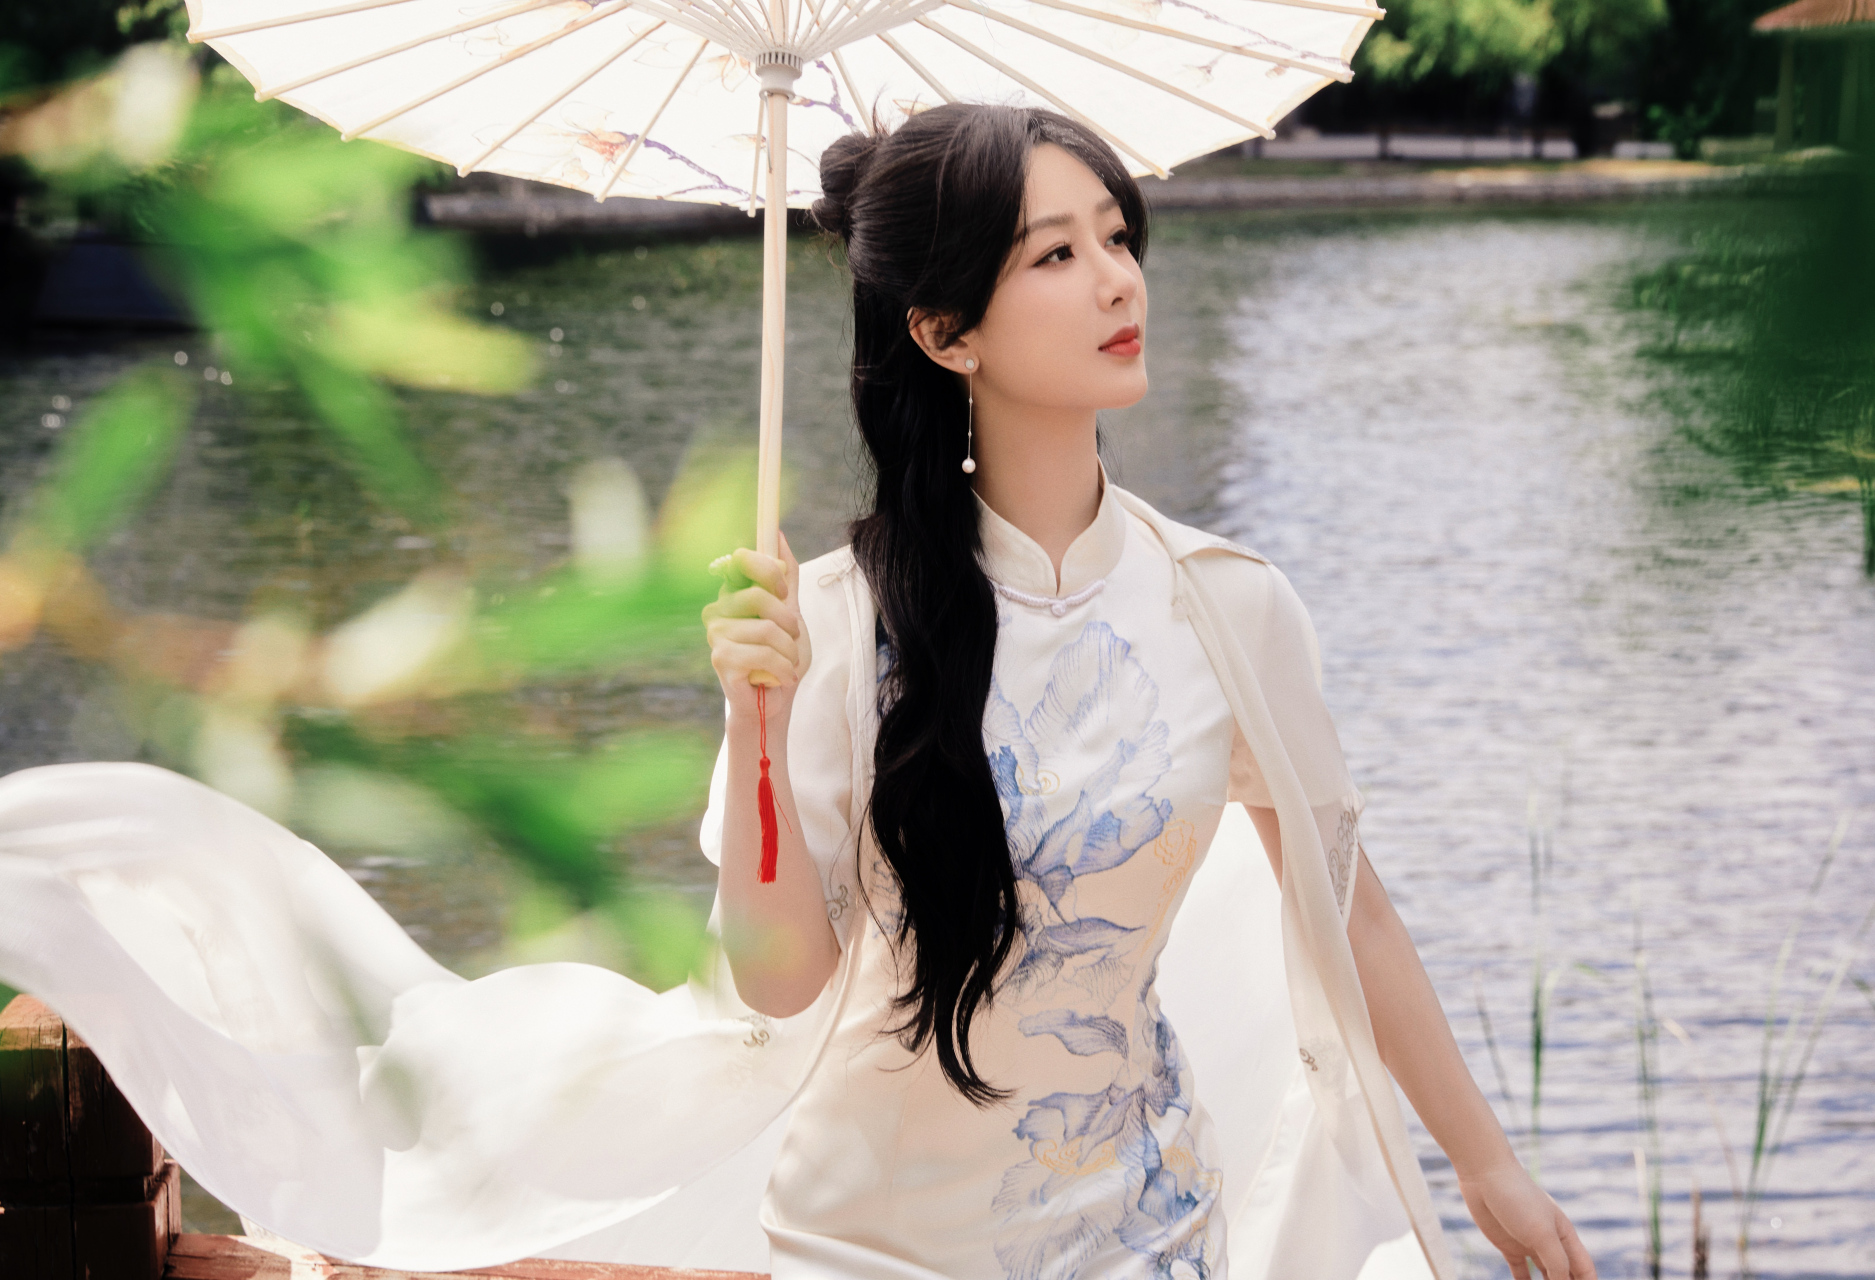 杨紫身穿旗袍出席活动,纯白旗袍加以中国风图案点缀,尽显东方韵味,更